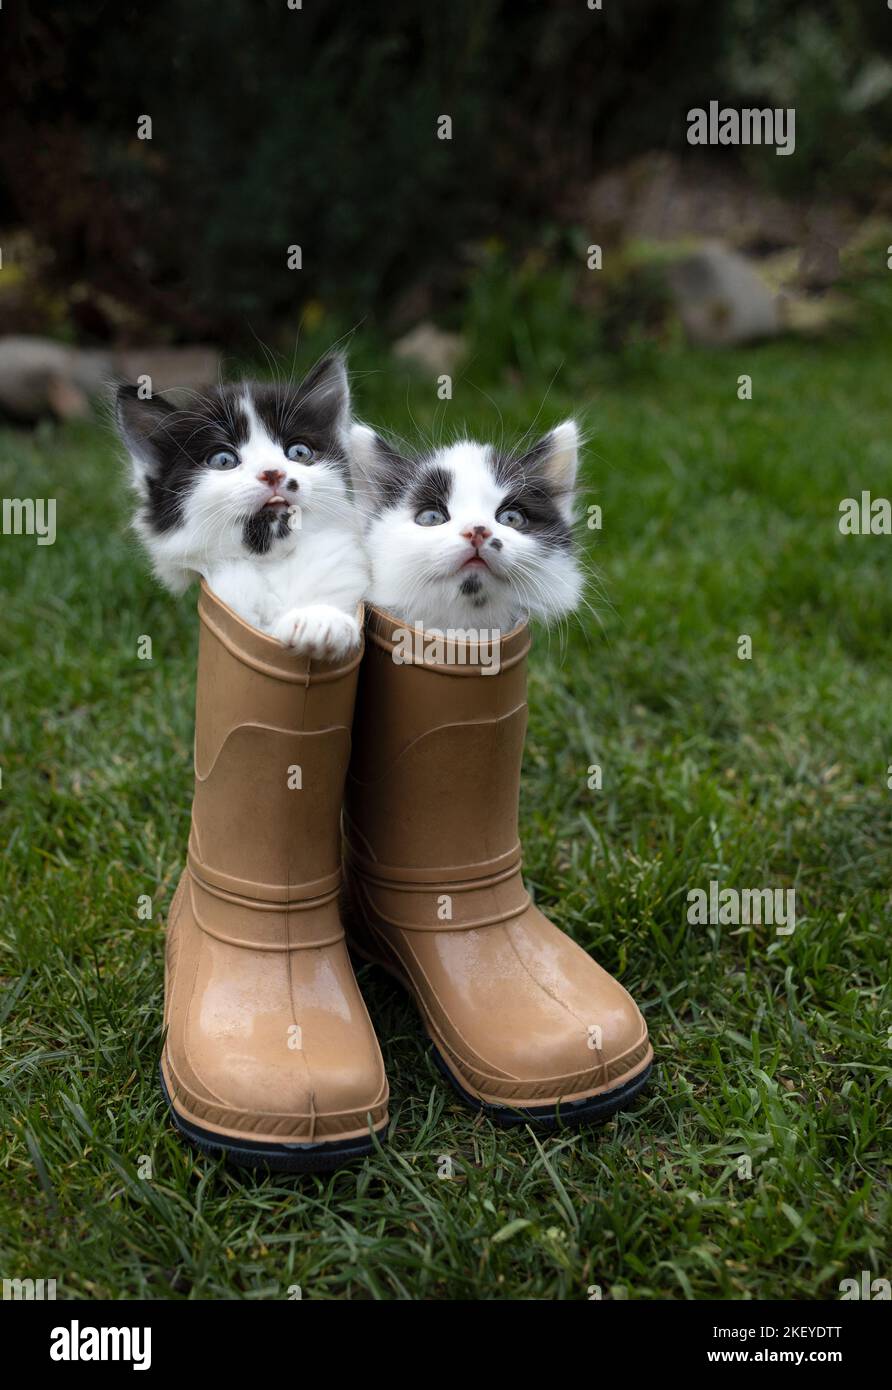 Gattini divertenti immagini e fotografie stock ad alta risoluzione - Alamy